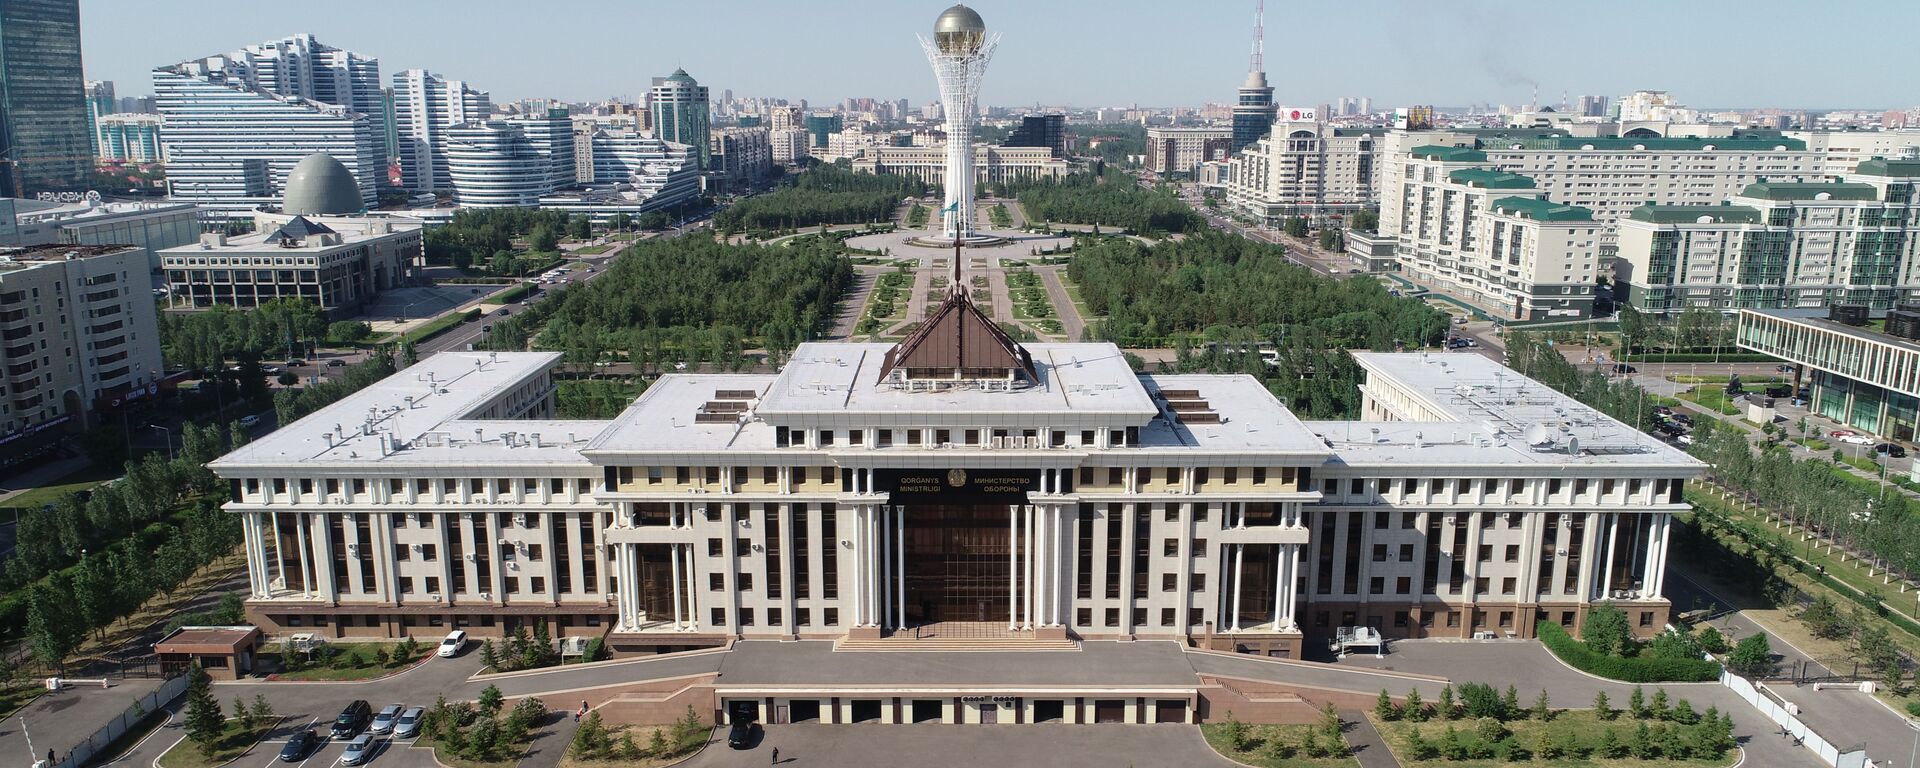 Здание министерства обороны Казахстана в Нур-Султане - Sputnik Қазақстан, 1920, 30.10.2020